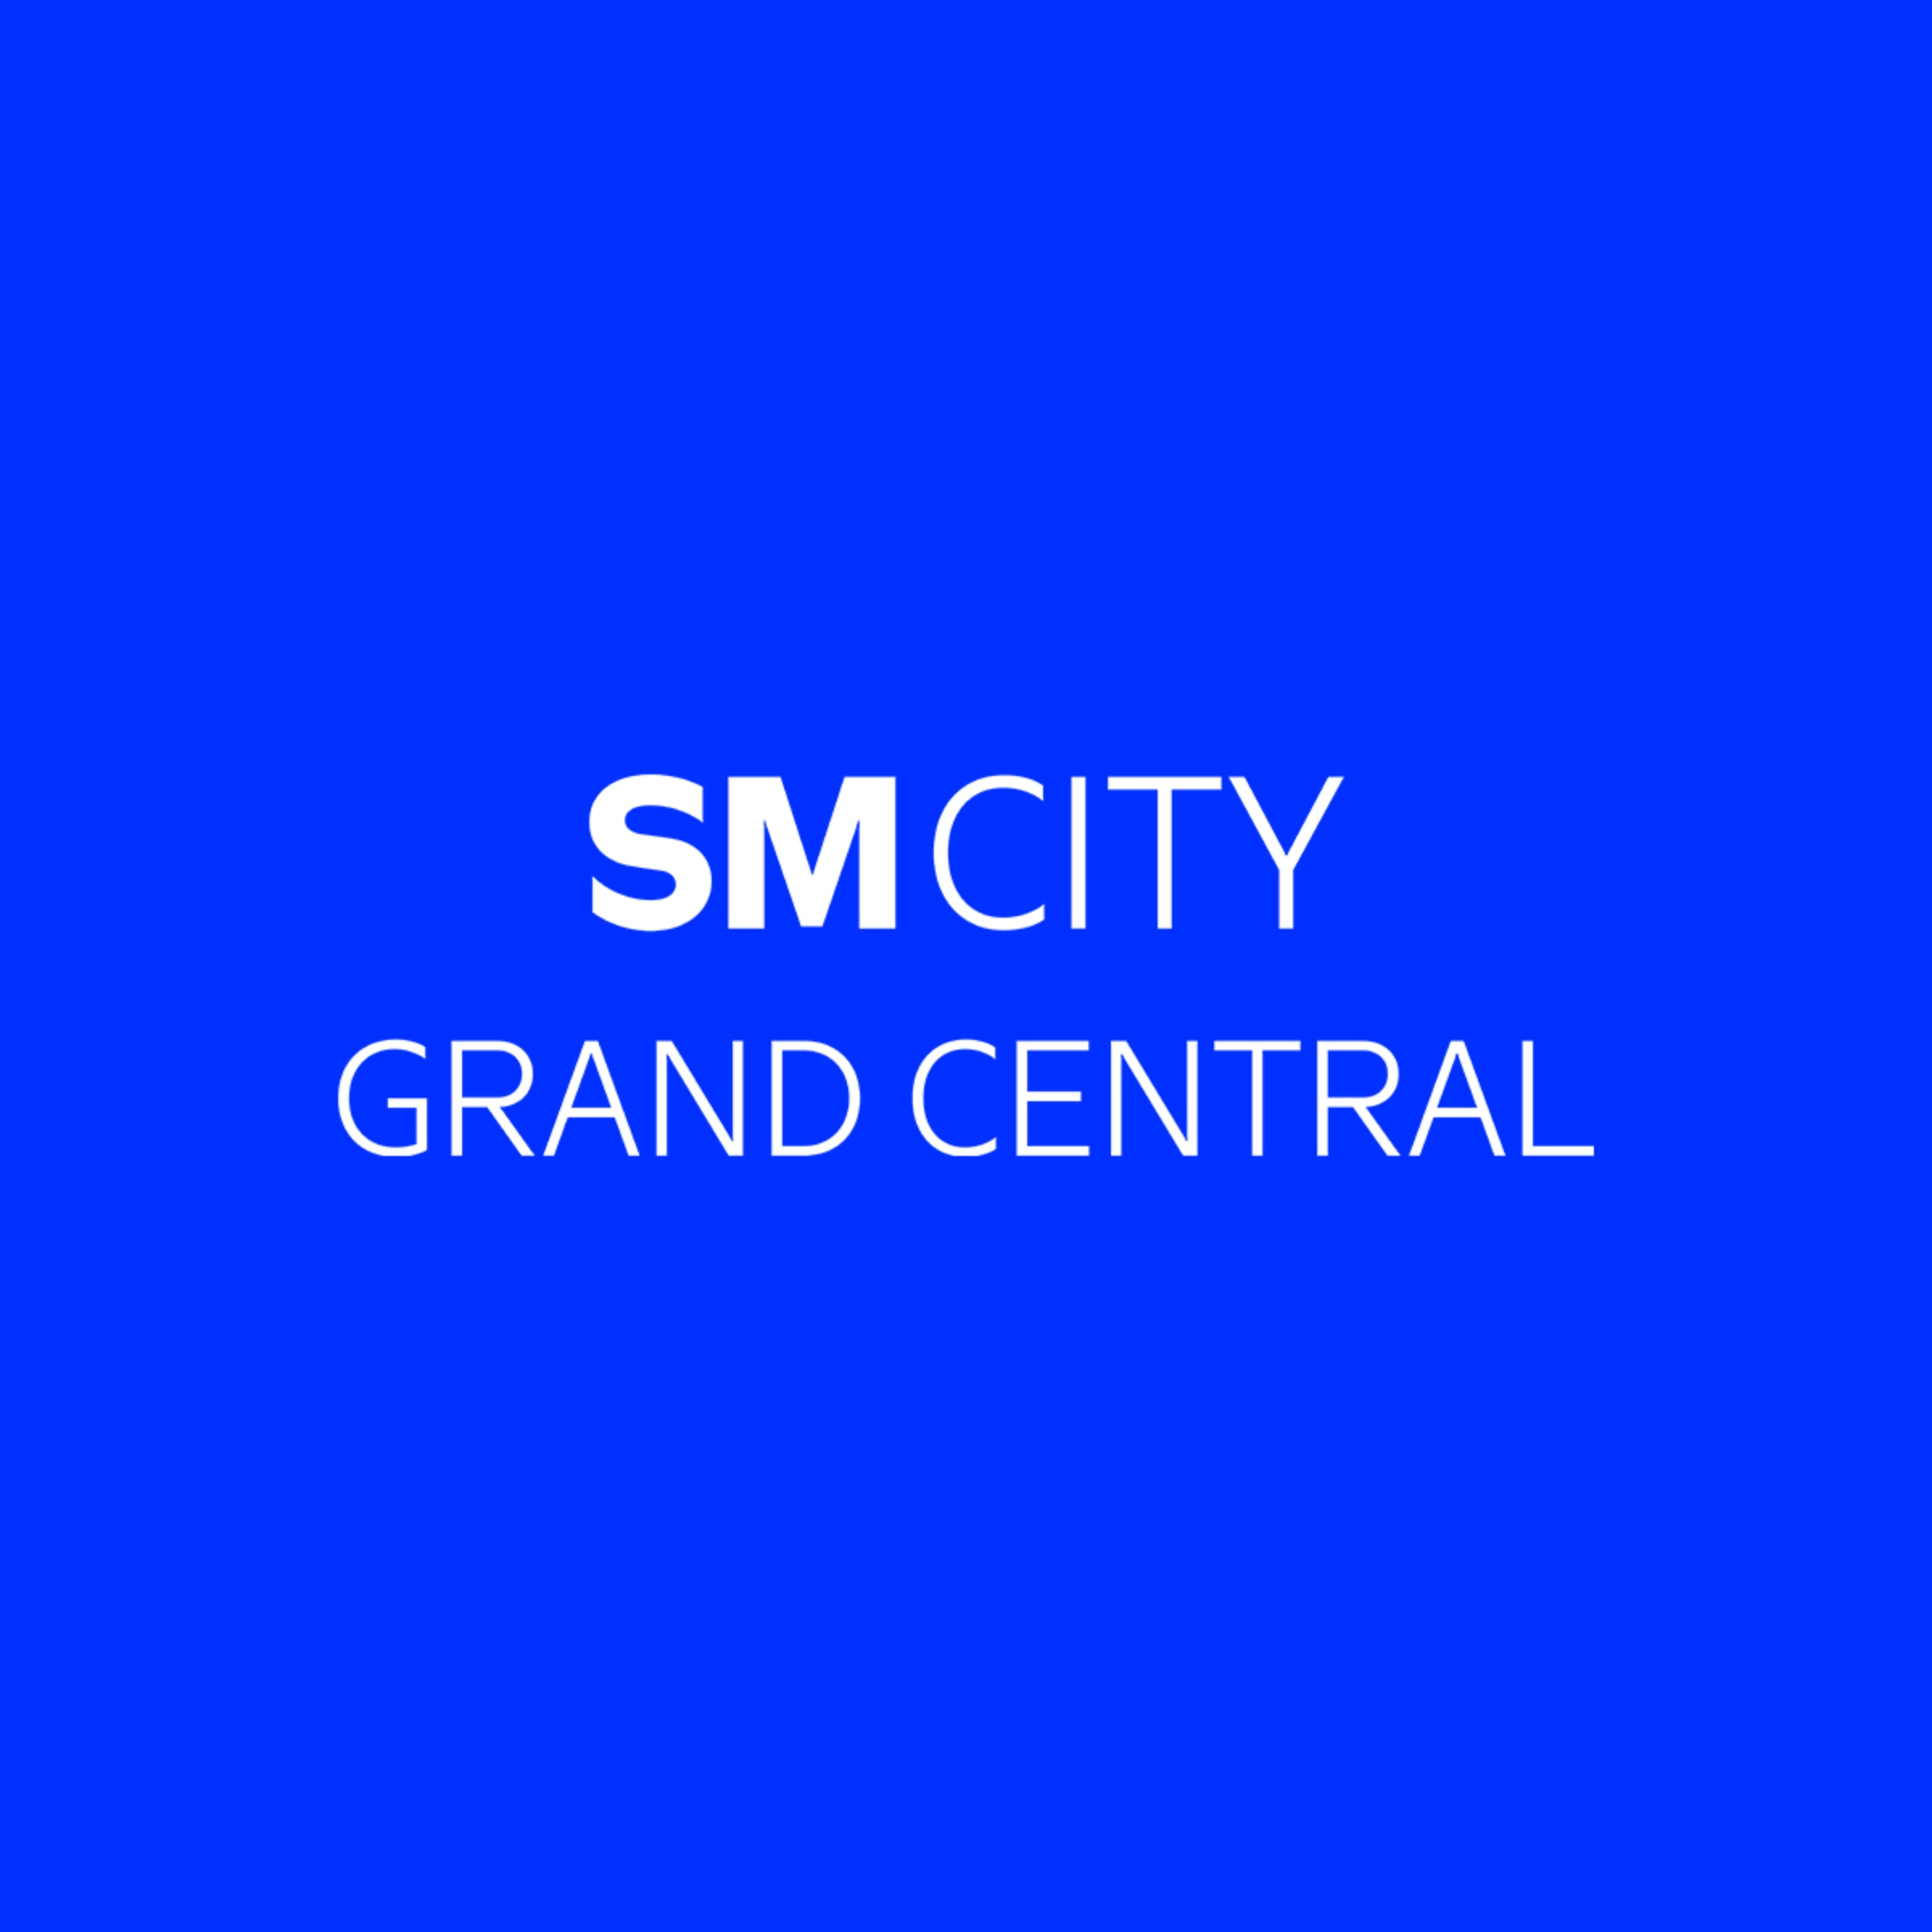 SM City Grand Central